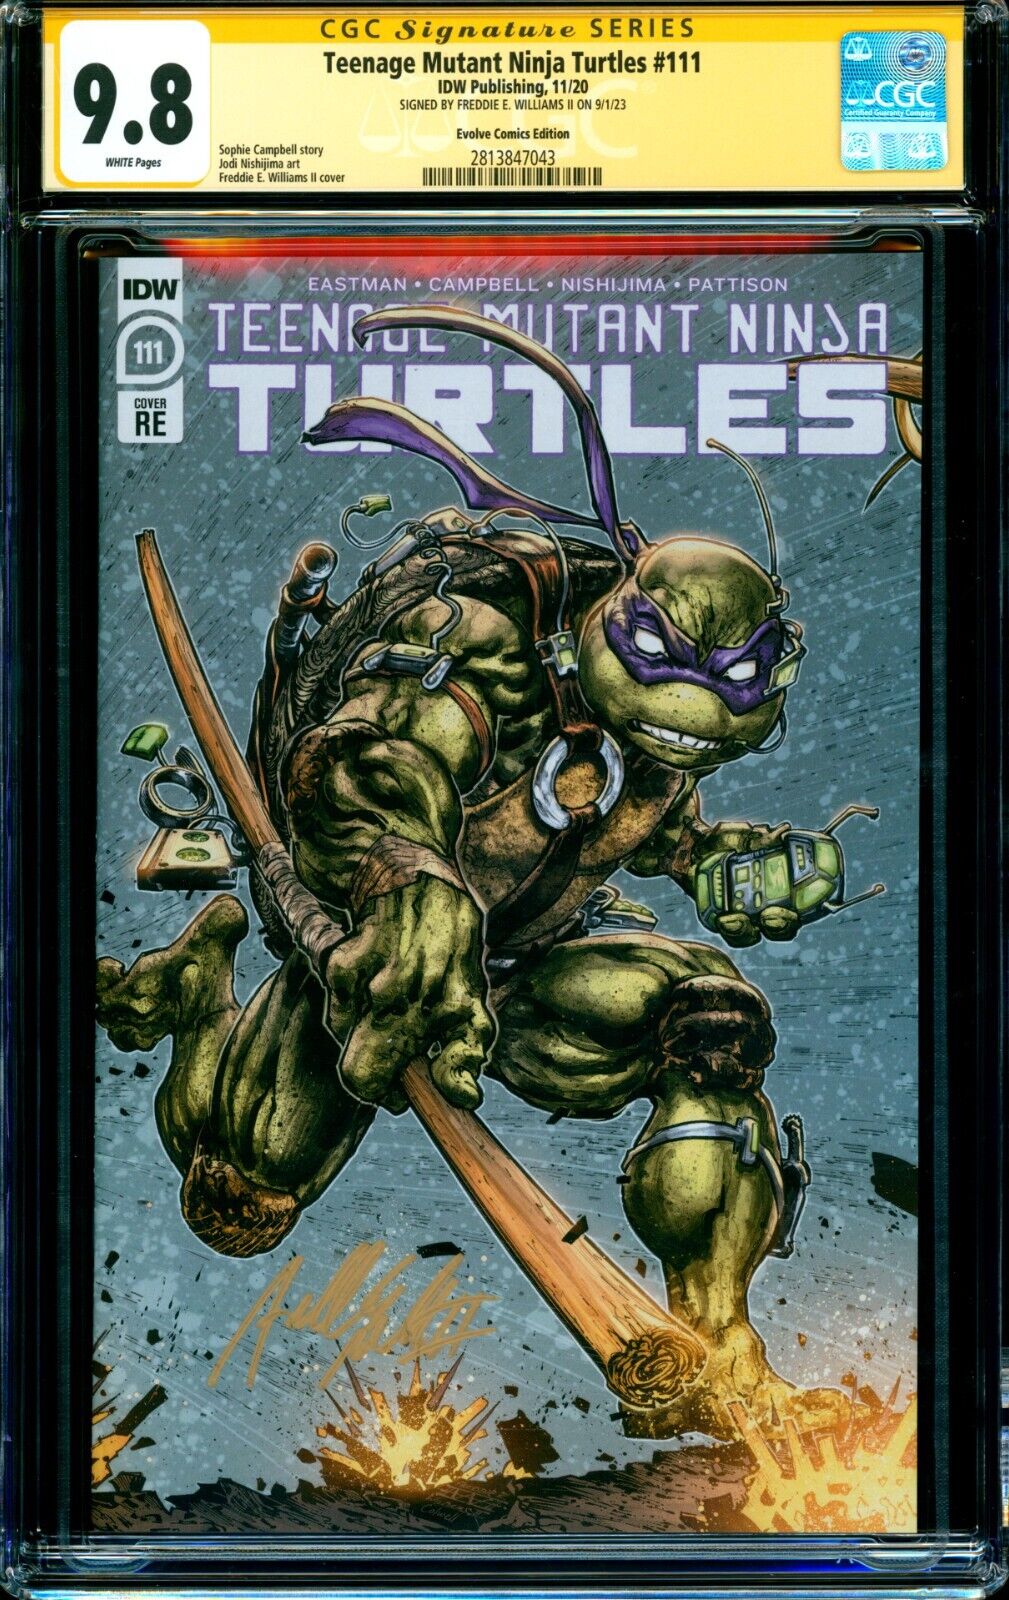 Teenage Mutant Ninja Turtles 111 DONATELLO VARIANT CGC SS 98 signed Williams